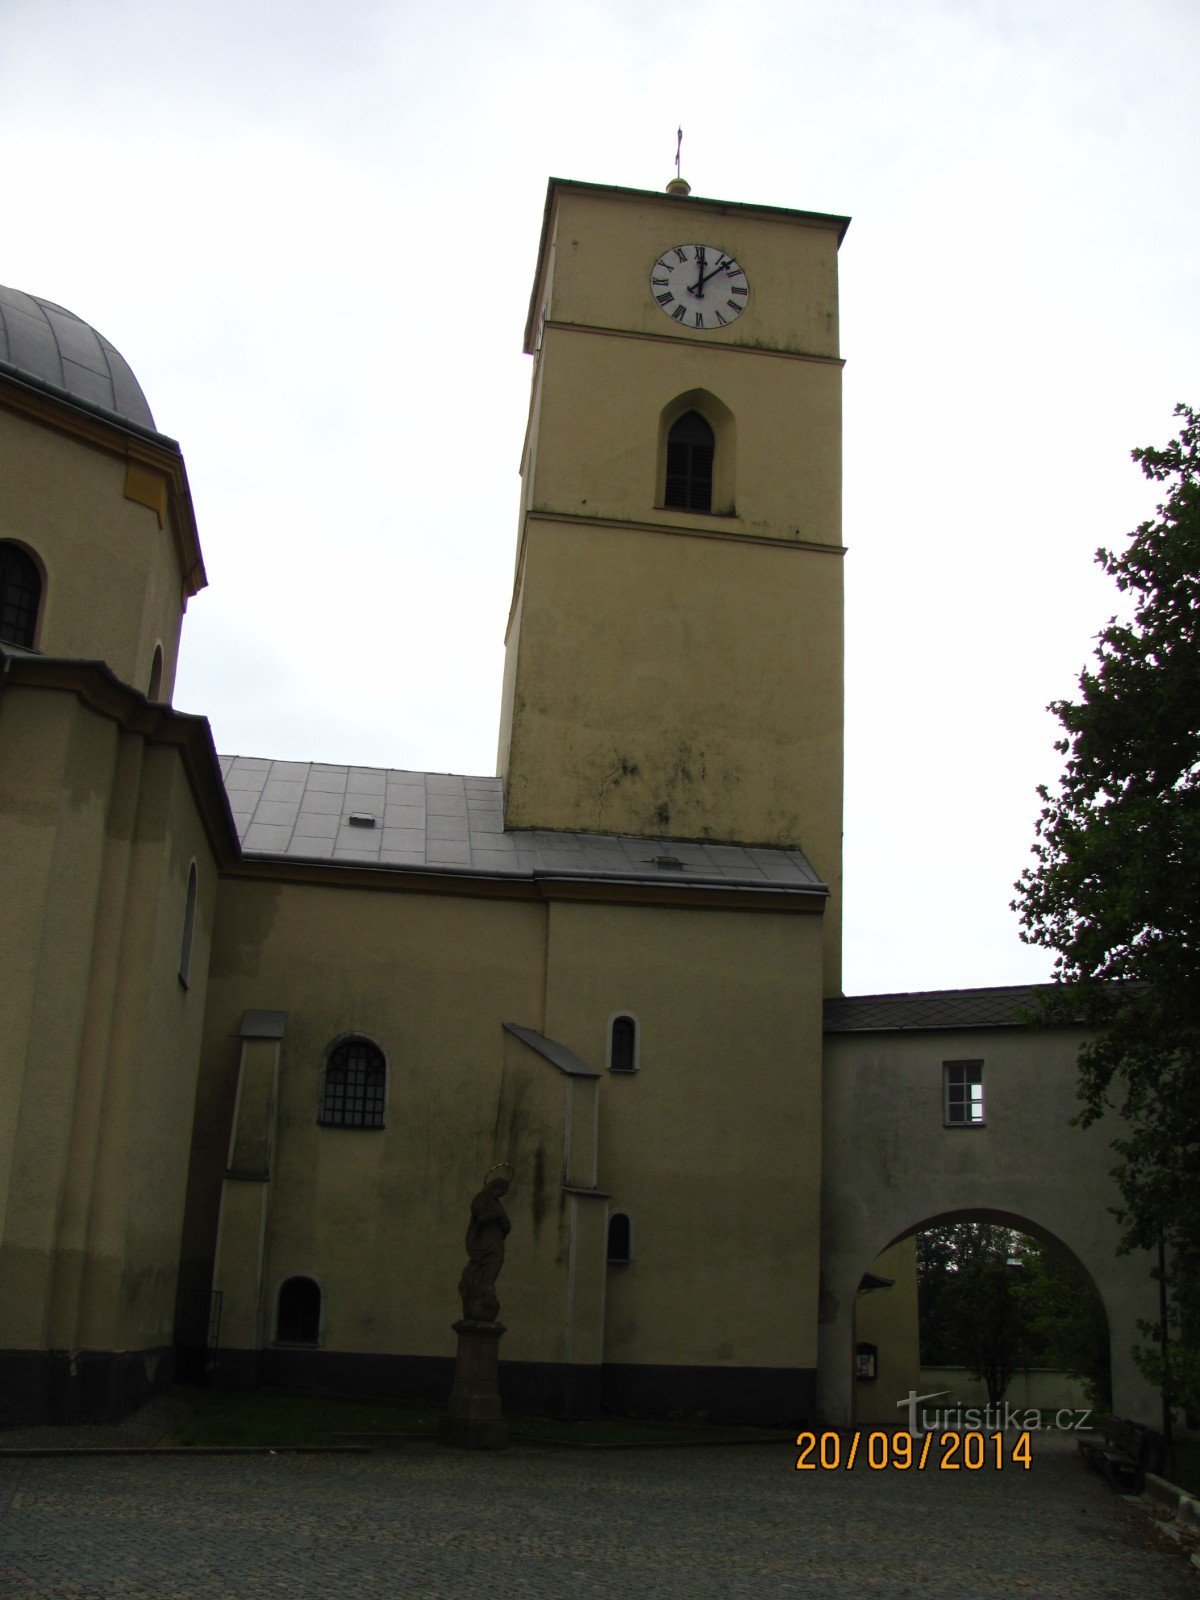 Nhà thờ St. Kateřiny ở Klimkovice